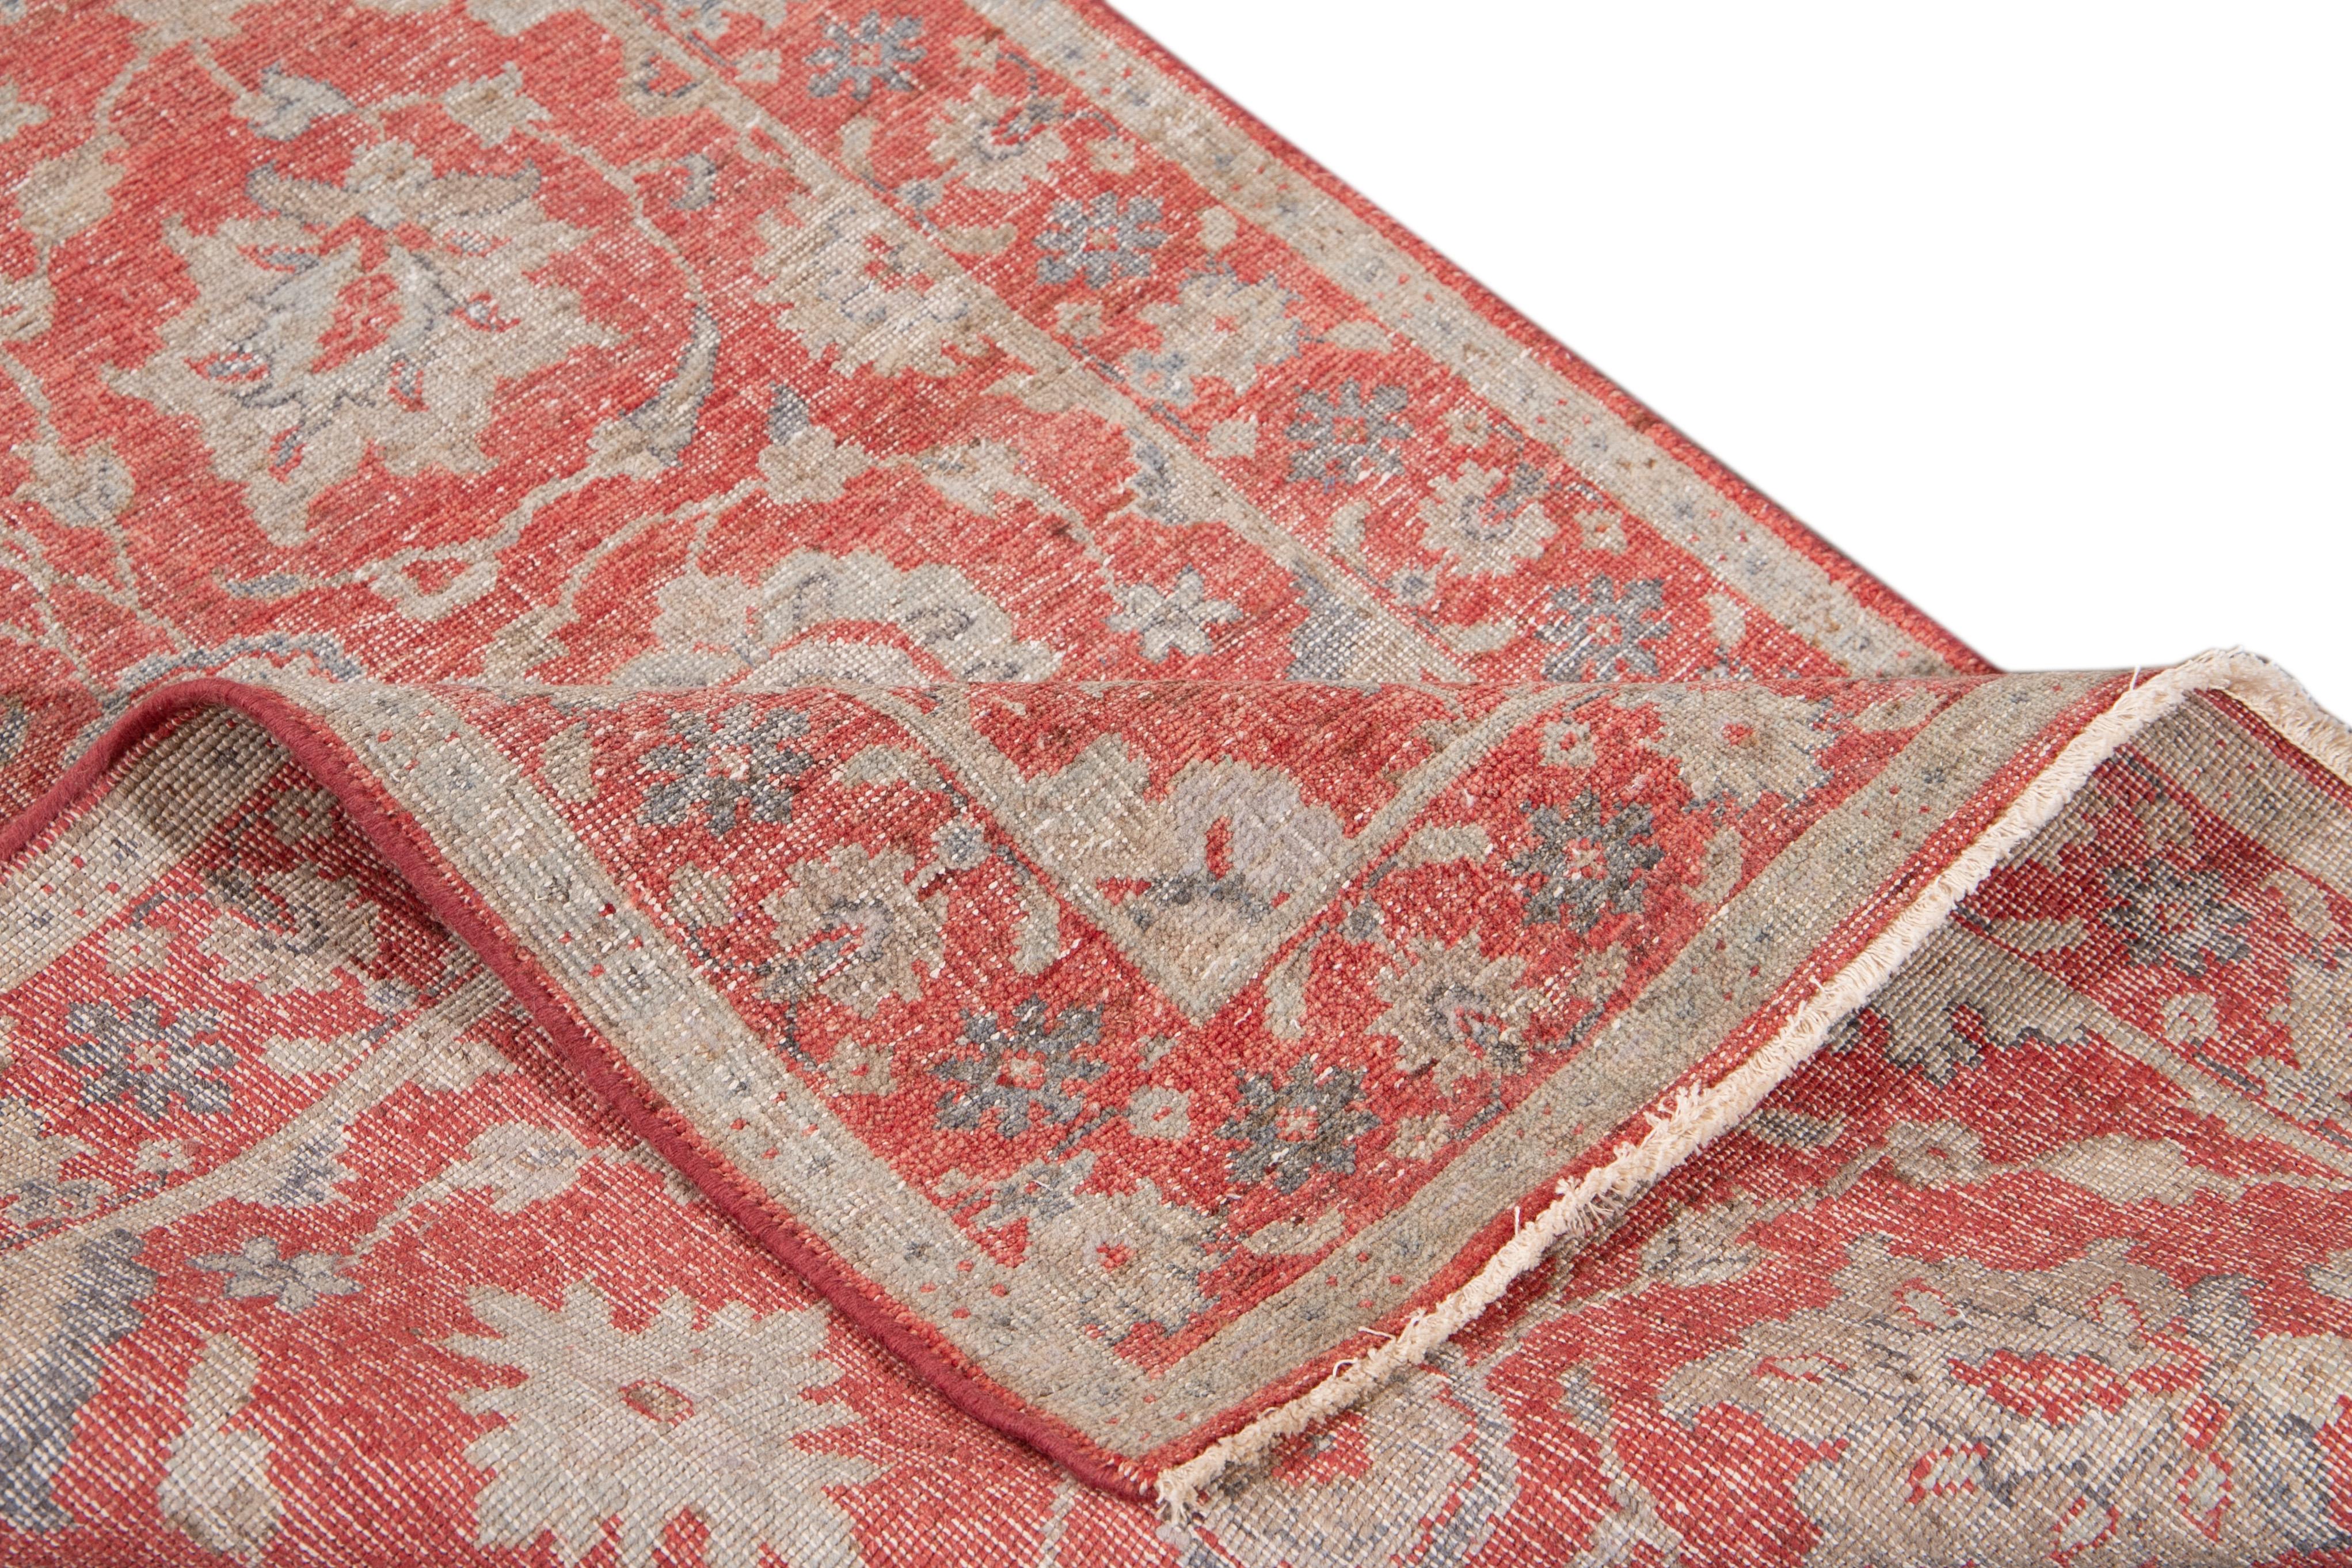 Schöner handgeknüpfter Läufer aus indischer Wolle. Dieser Teppich hat ein rotes Feld mit beigefarbenen und blauen Blumenakzenten im ganzen Raum.

Dieser Teppich misst 3' 1